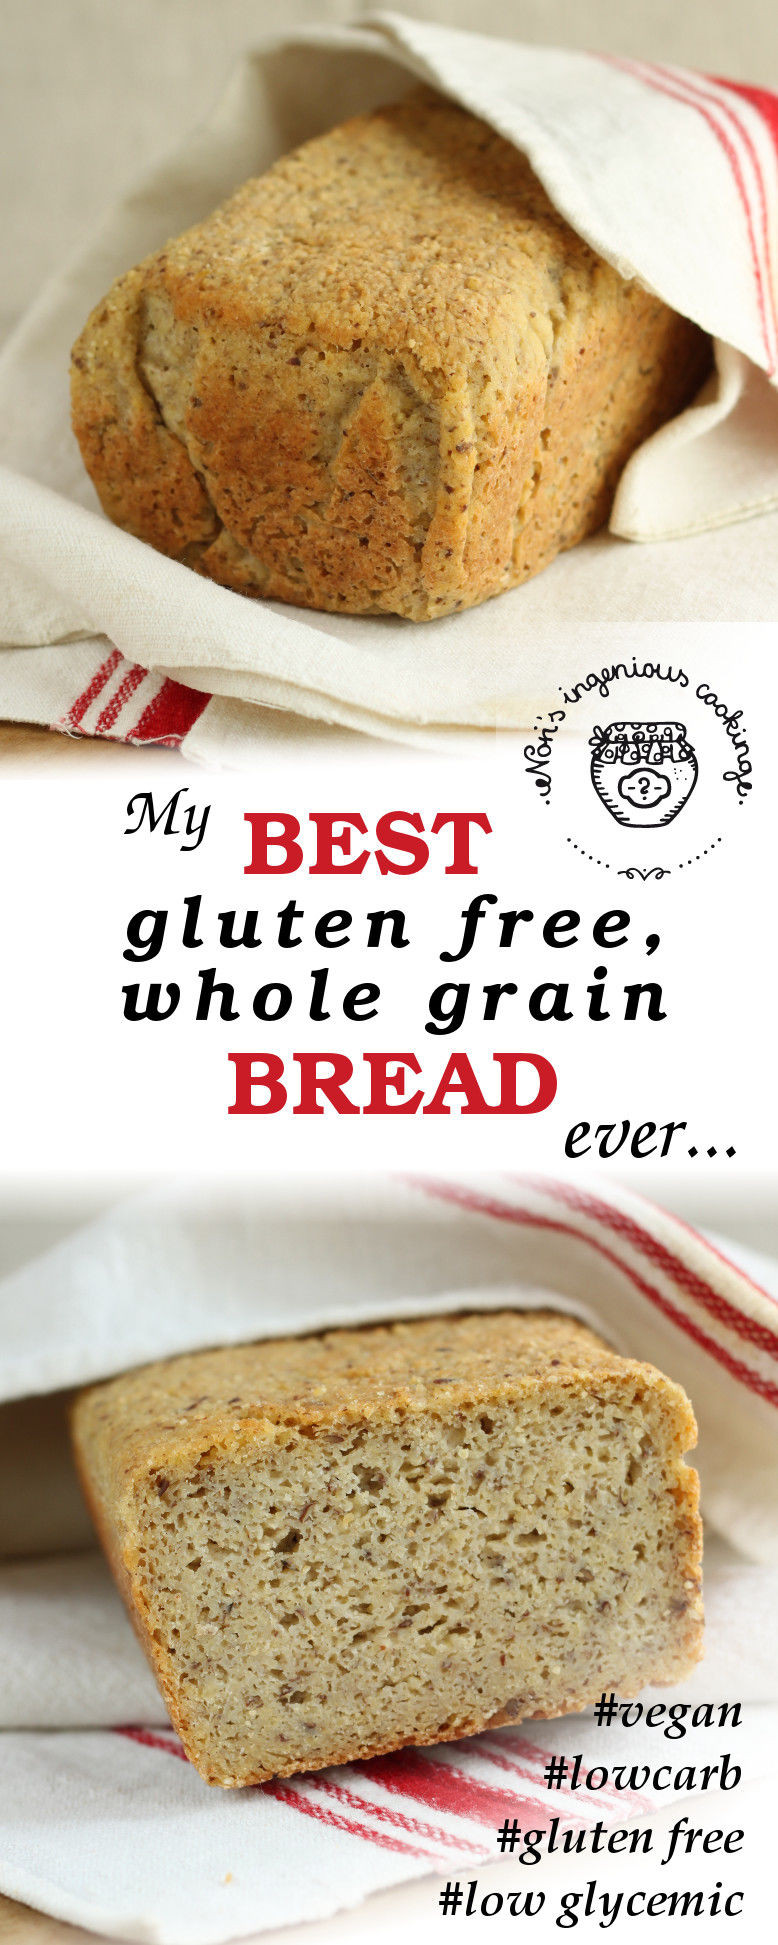 Best Gluten Free Bread
 My best gluten free whole grain bread ever vegan